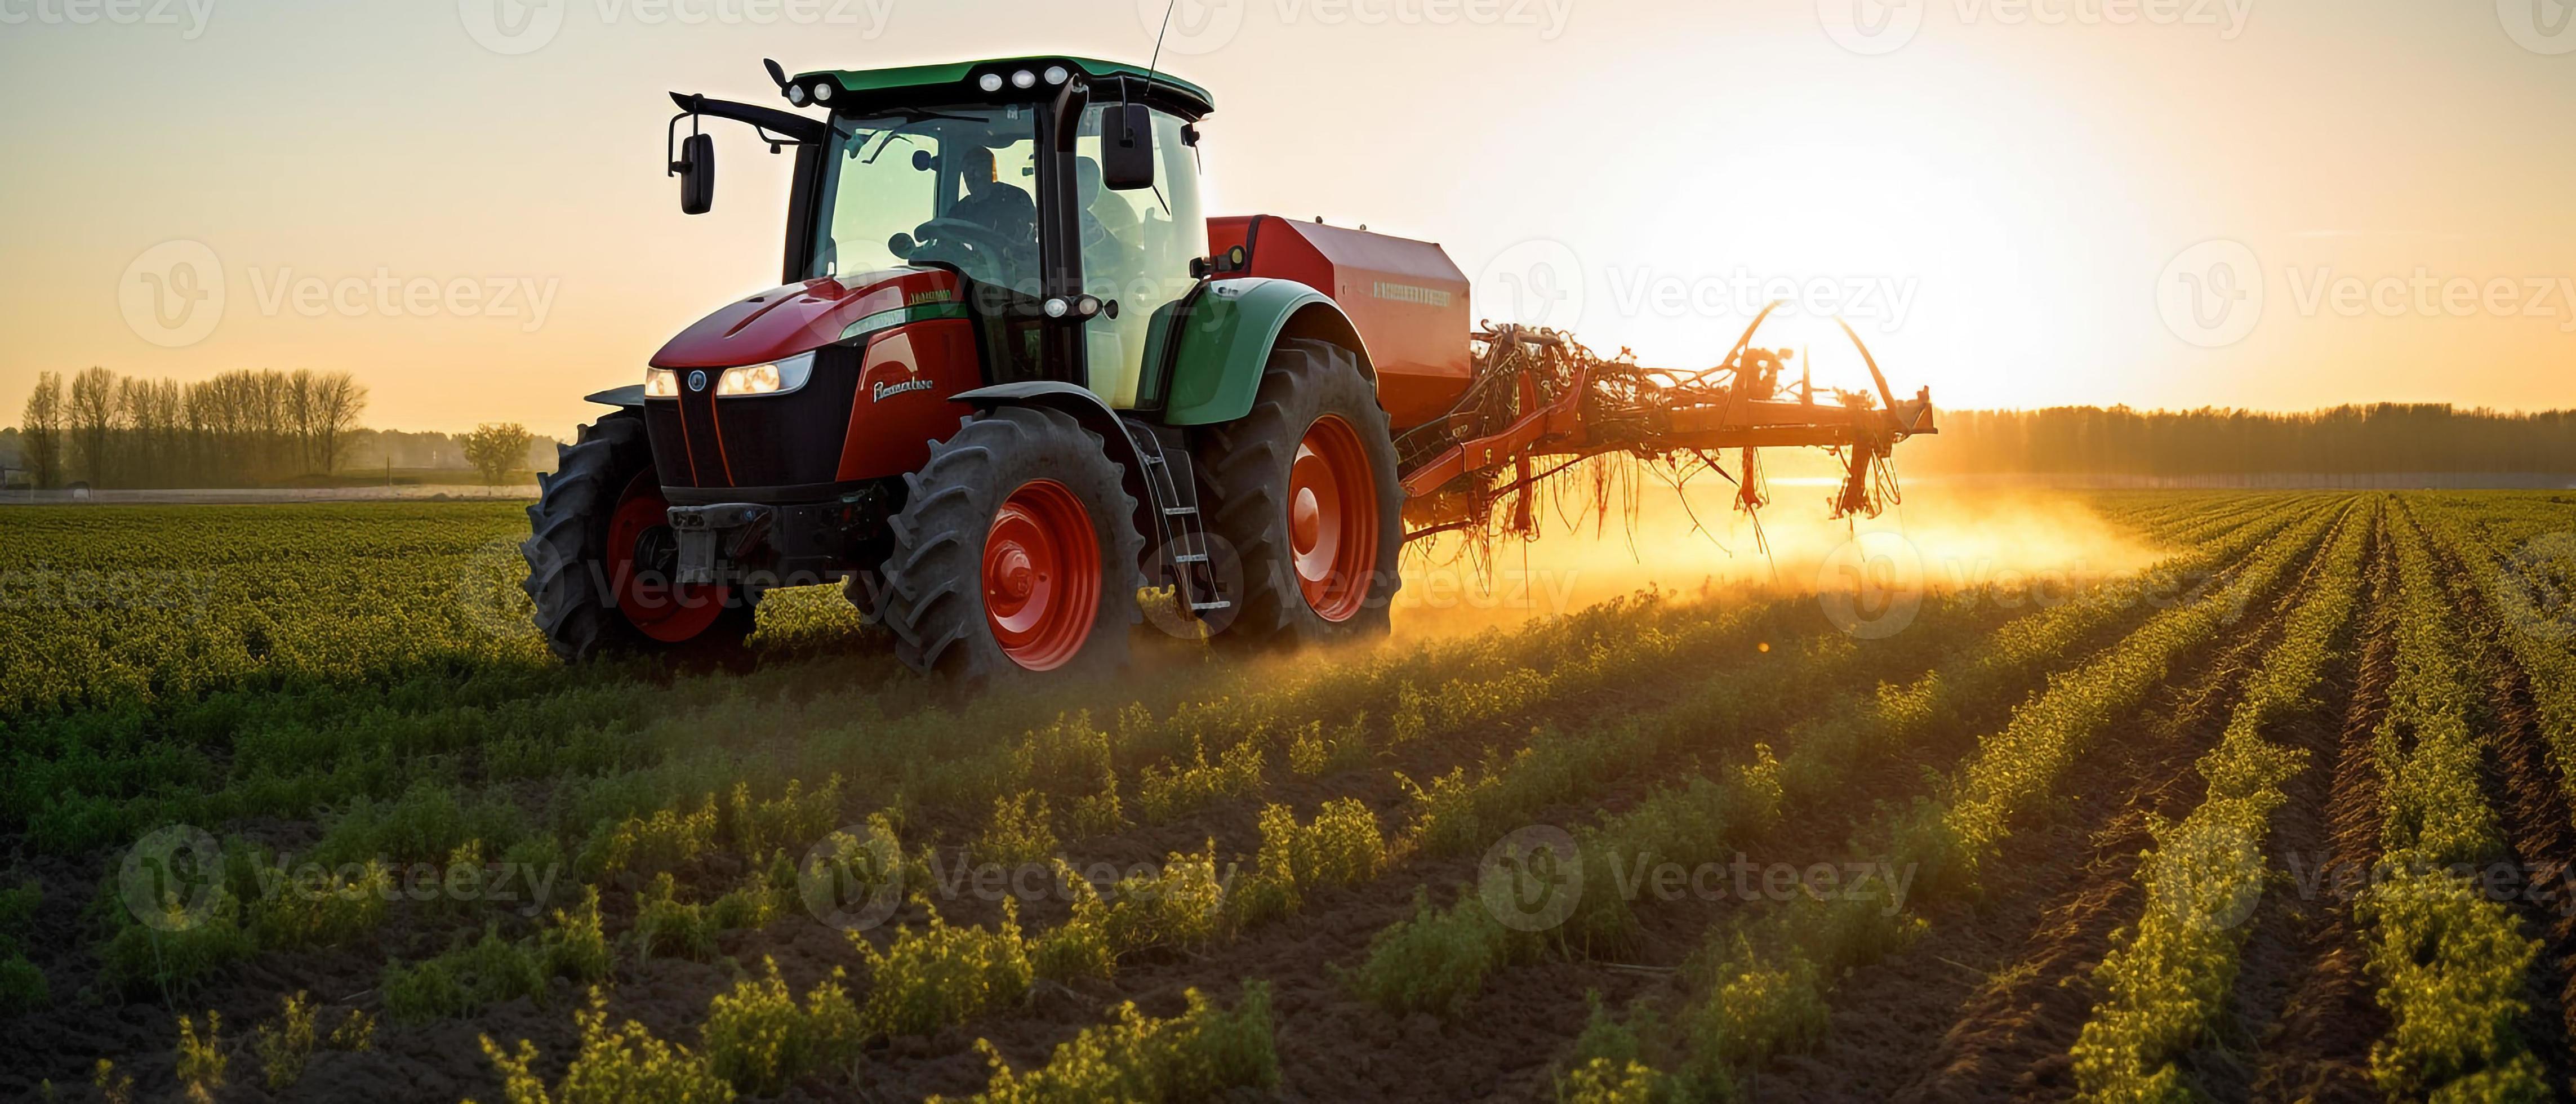  Landwirtschaft Hintergrundbild 4573x1960. Landwirtschaft Traktor Sprühen Pflanzen Im Ein Feld. 23060797 Stock Photo Bei Vecteezy